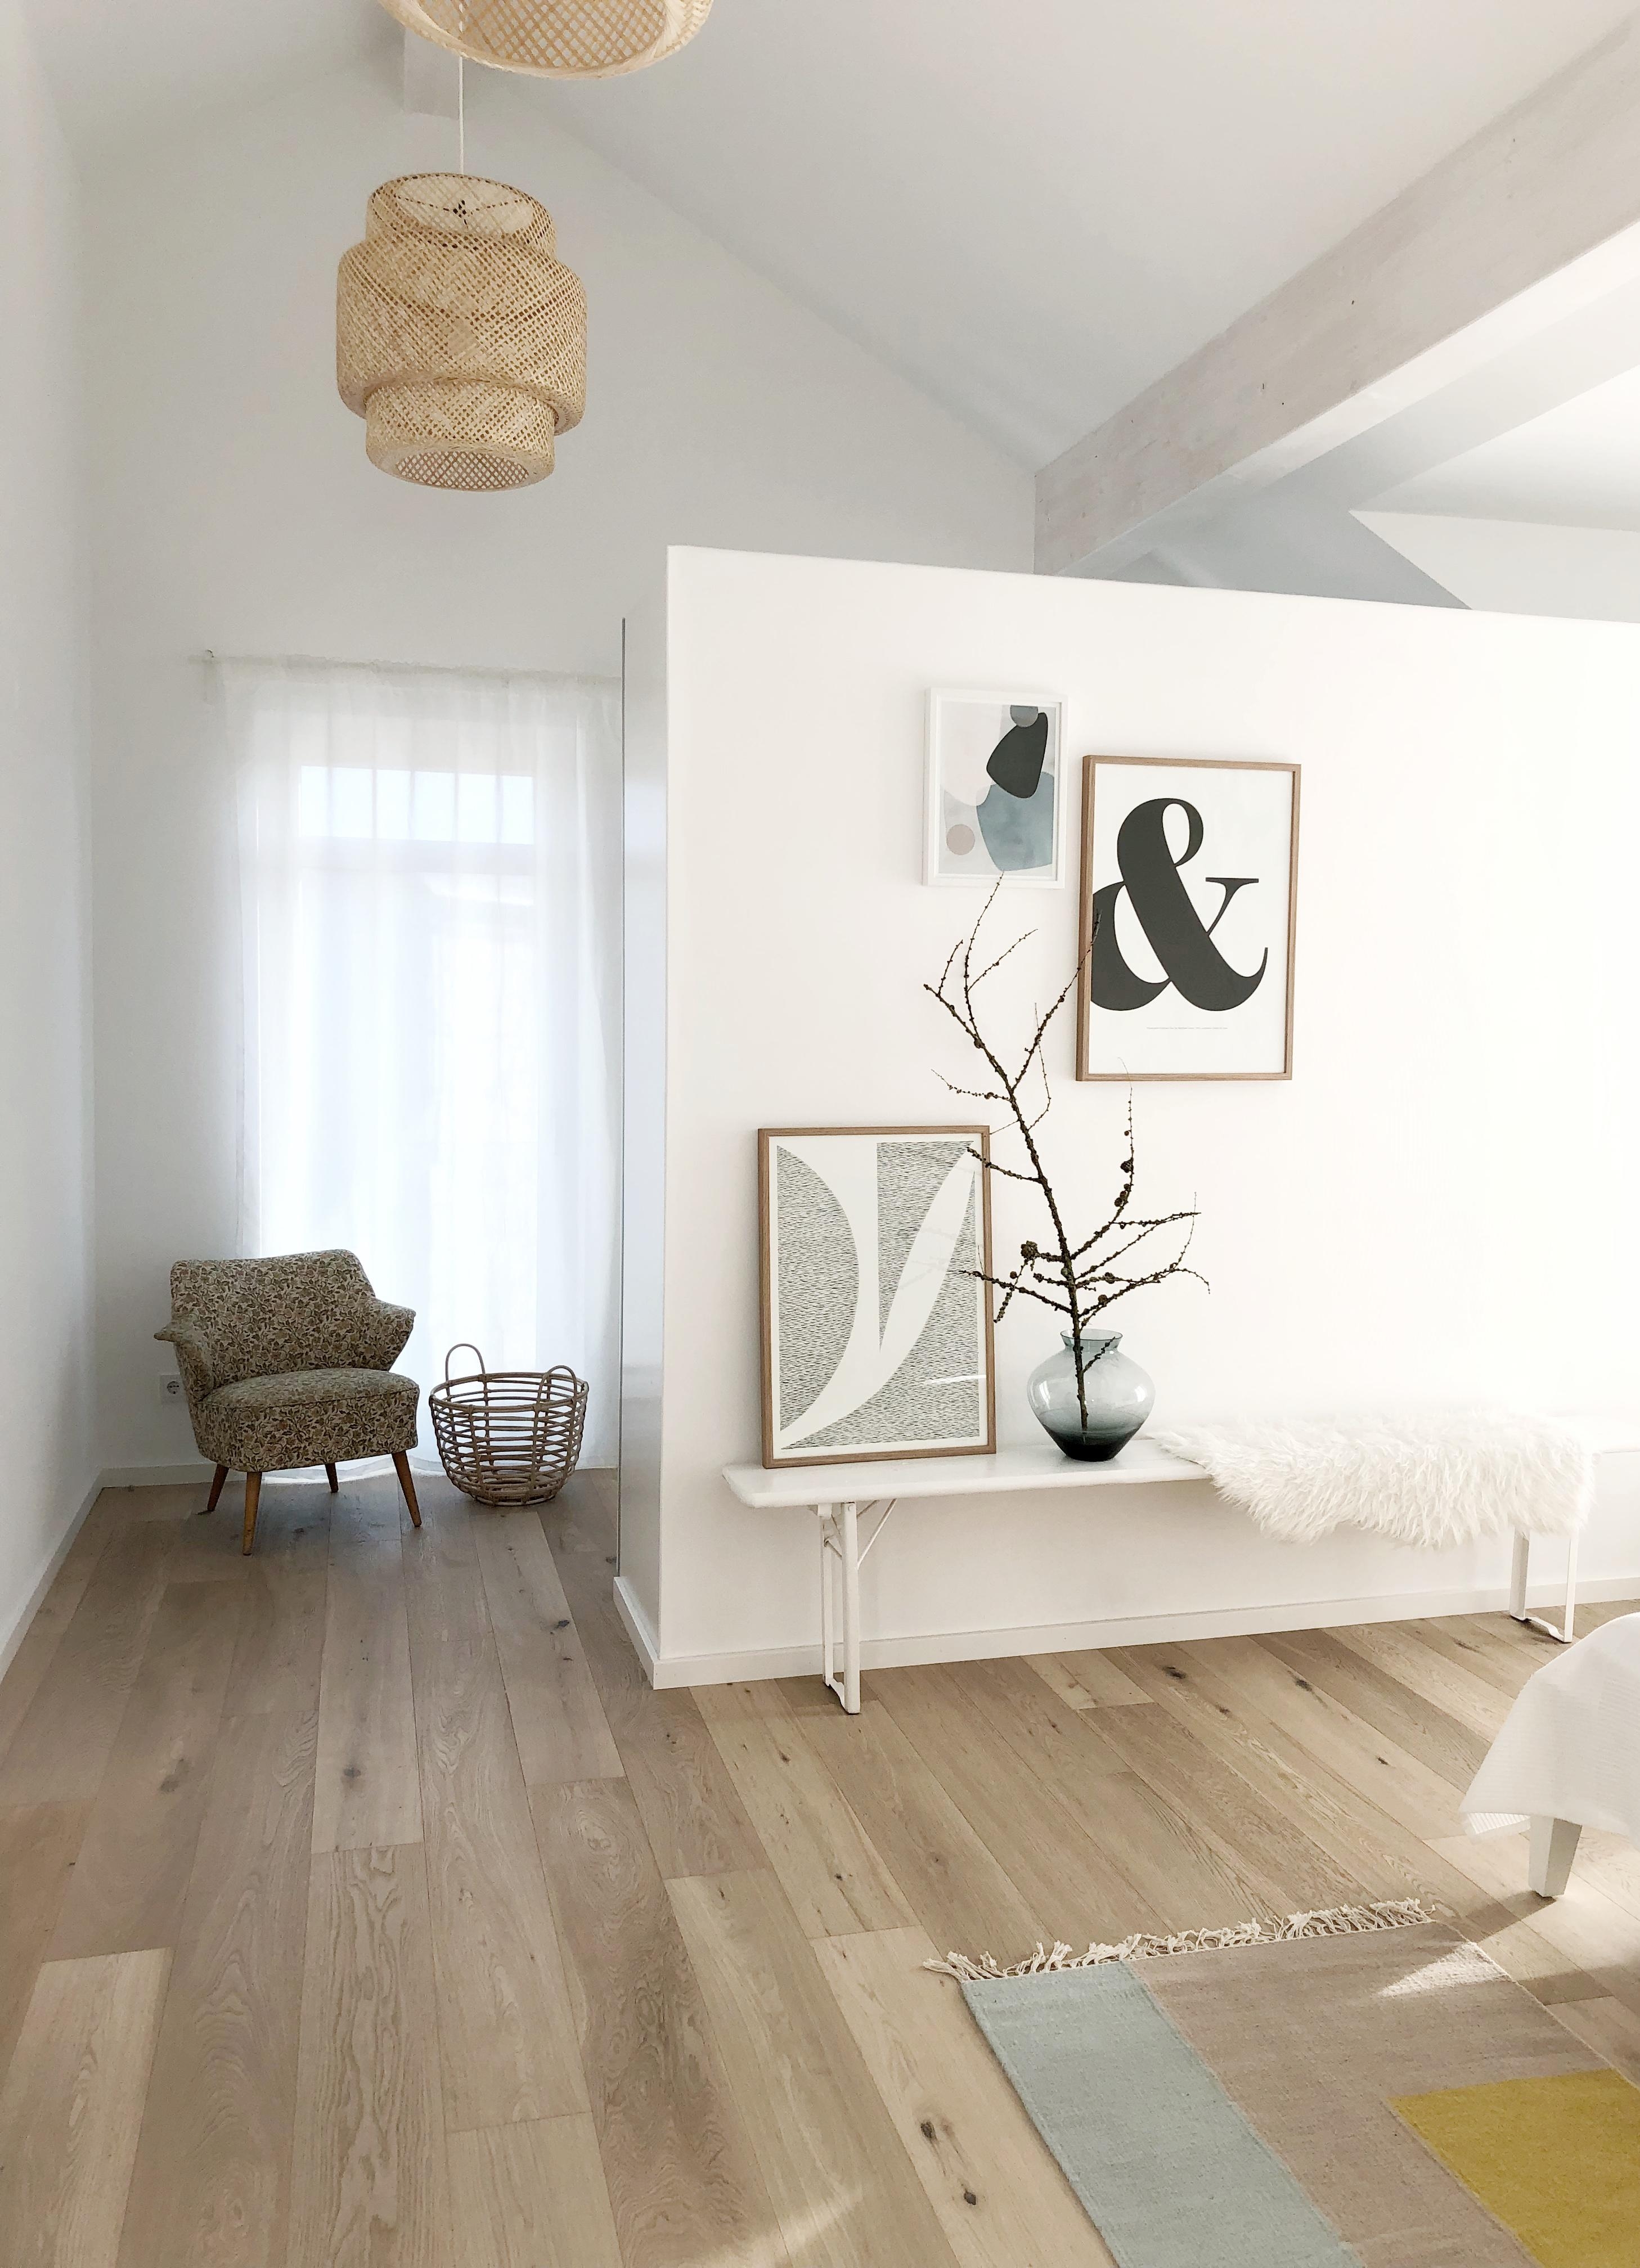 Unser Schlafzimmer!
#schlafzimmer#whitehome#whiteandwood#wood#newin#neuebilder#whiteliving#nordic